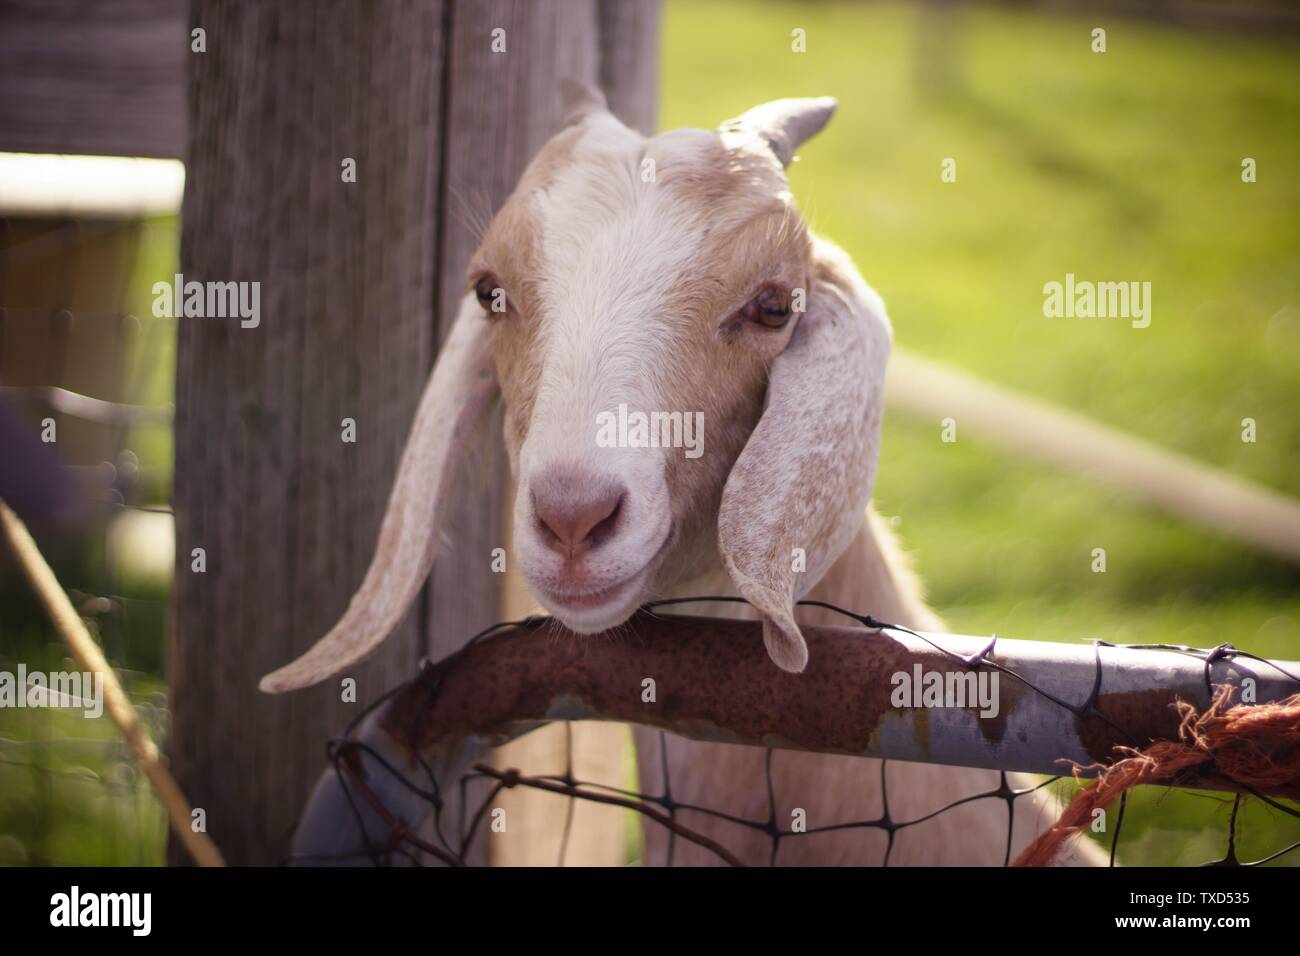 Primo piano di una capra bianca e marrone con lunghe orecchie e corna con la testa su recinzione di legno Foto Stock